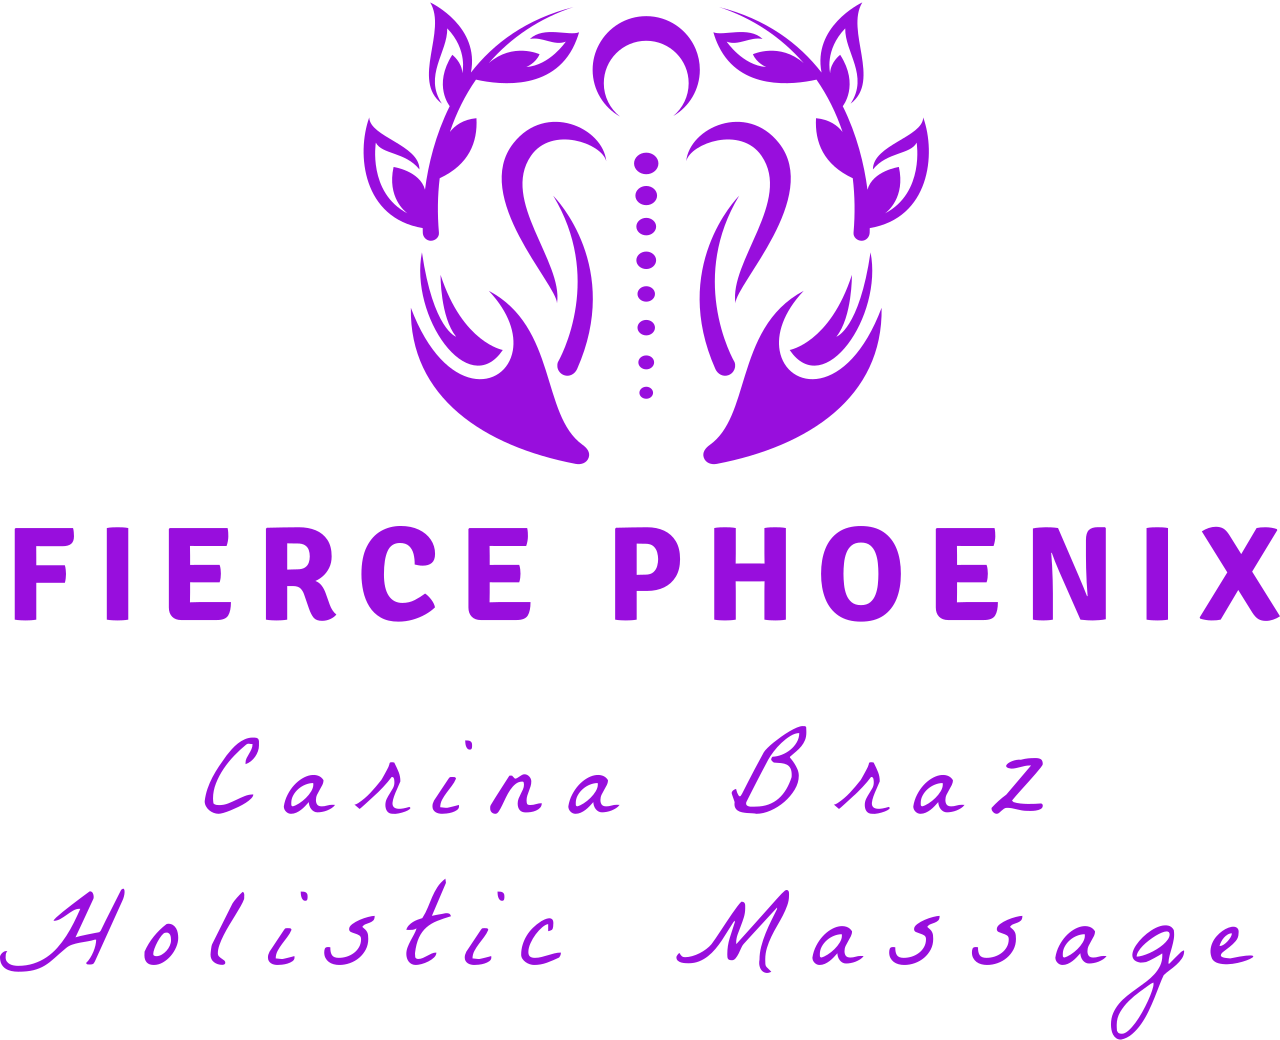 Fierce Phoenix 's logo